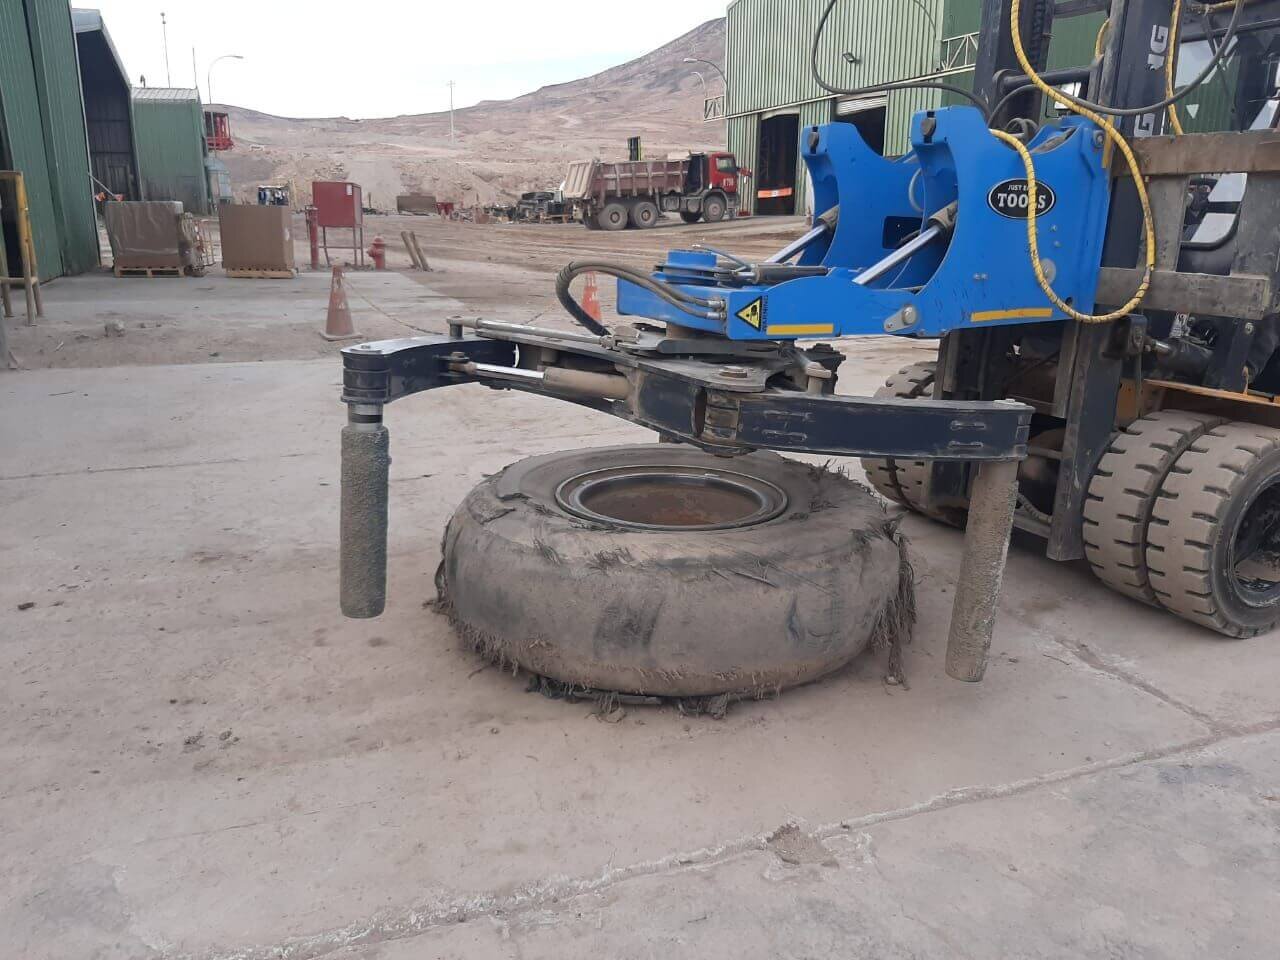 Austral Mining Services - oferecendo um serviço móvel de pneus no local